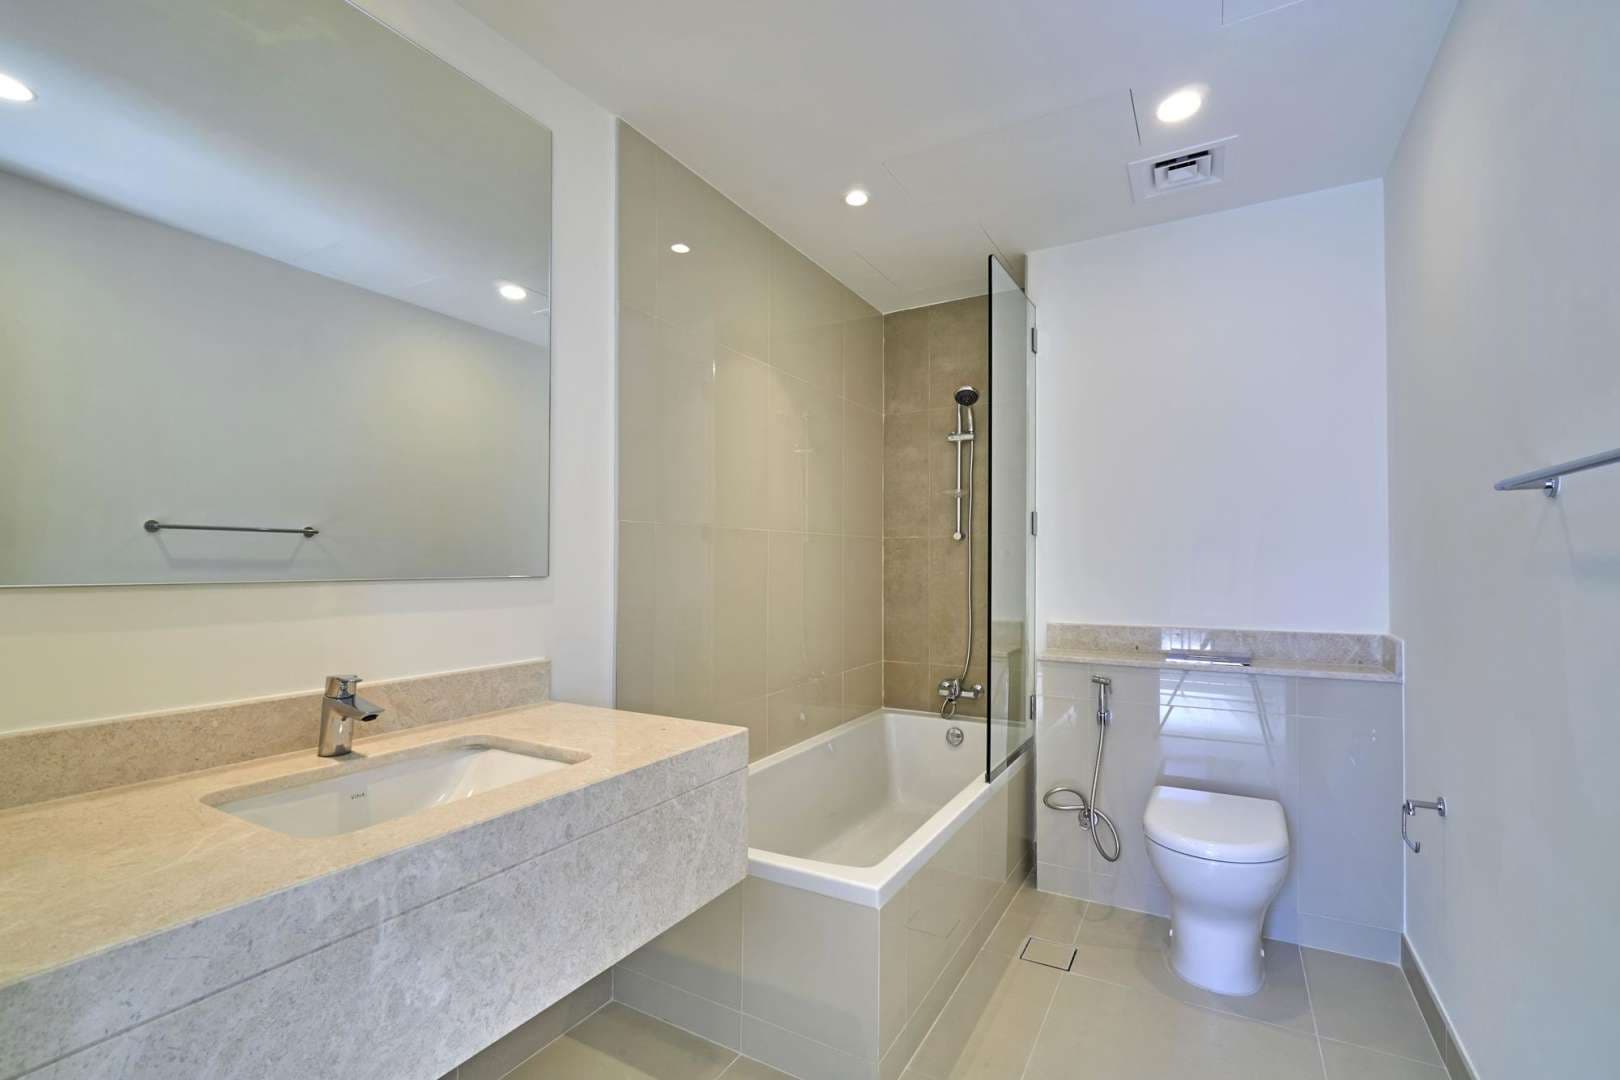 4 Bedroom Townhouse For Sale Maple At Dubai Hills Estate Lp06002 1683e6c2287a4000.jpg